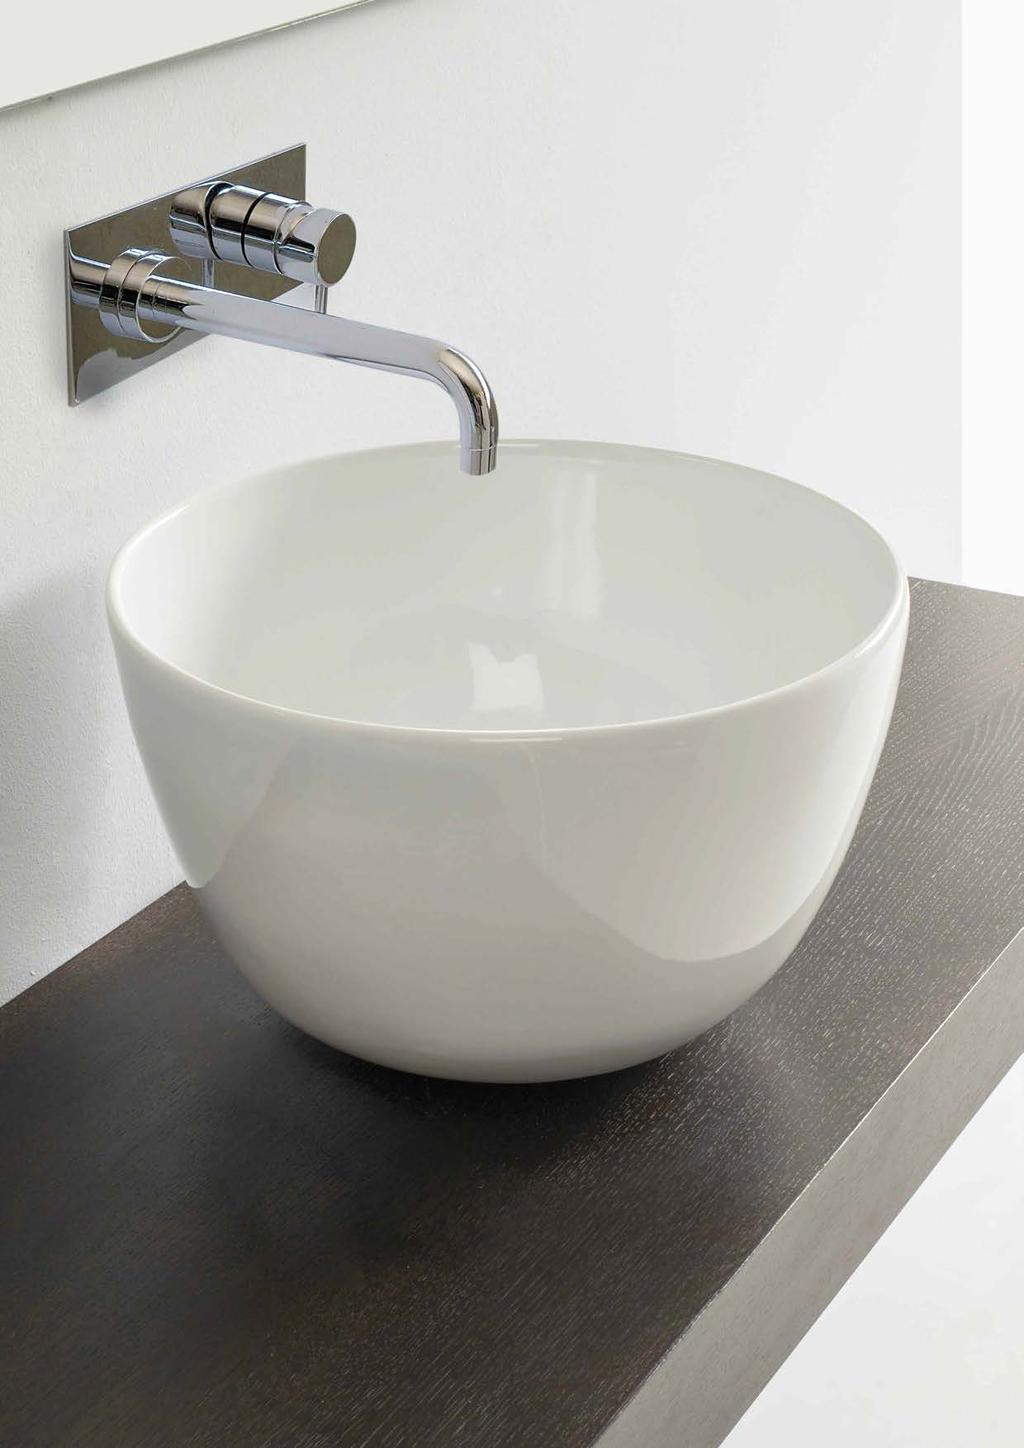 Vanity Bowl Cod 3155 Appoggio diam cm.44,5 x h.28 Un pezzo di carattere in tipico stile minimalista.